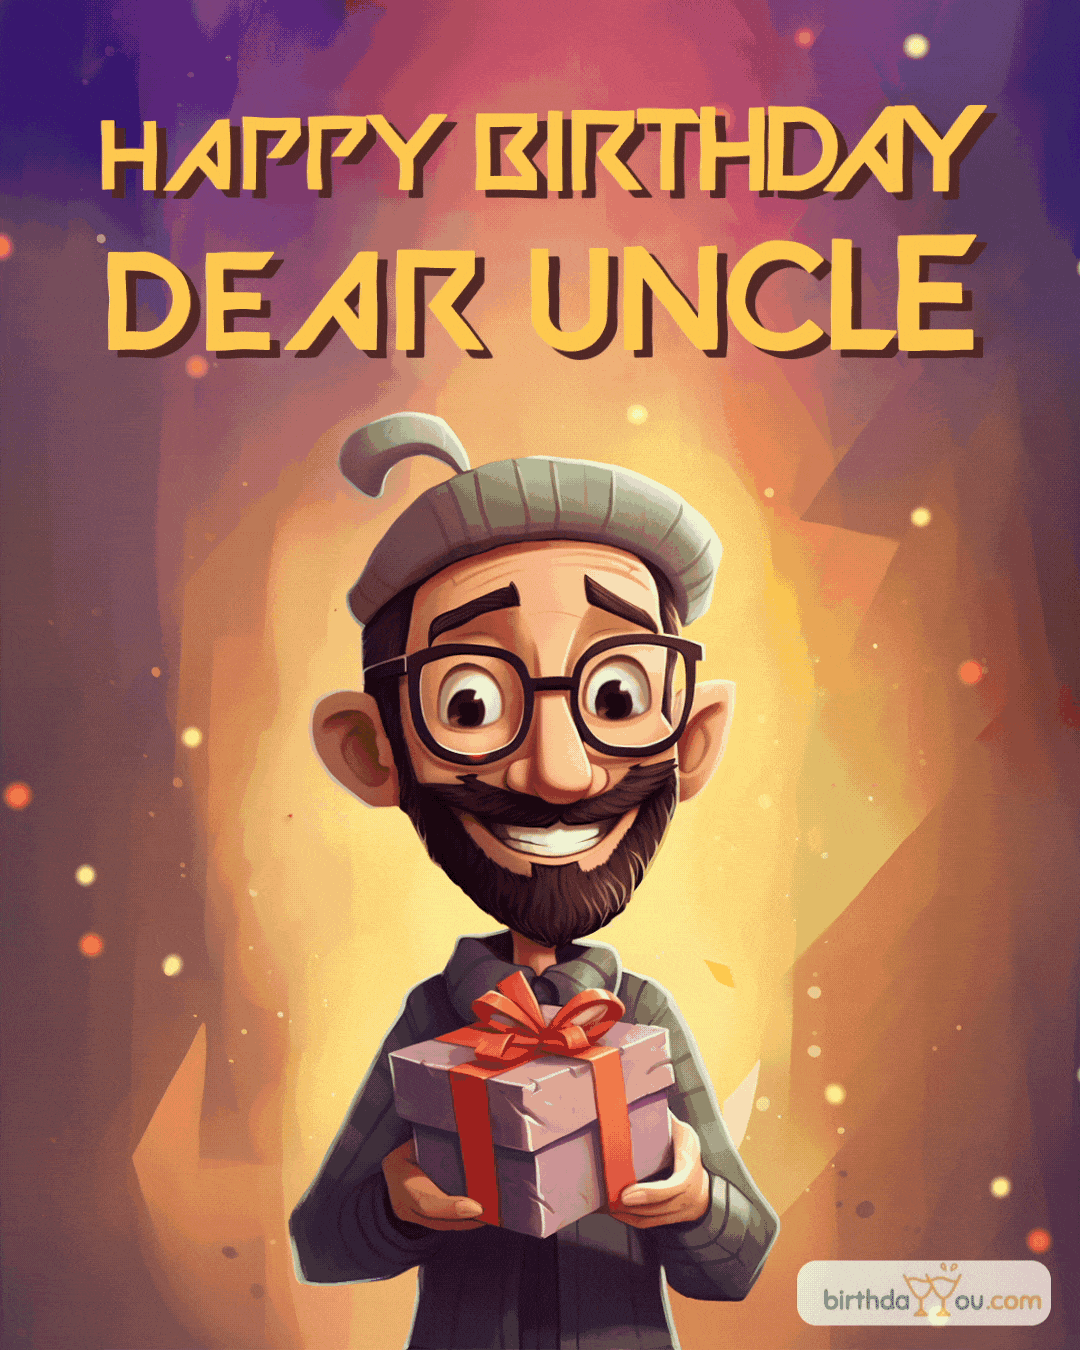 Happy Birthday Dear Uncle - birthdayyou.com